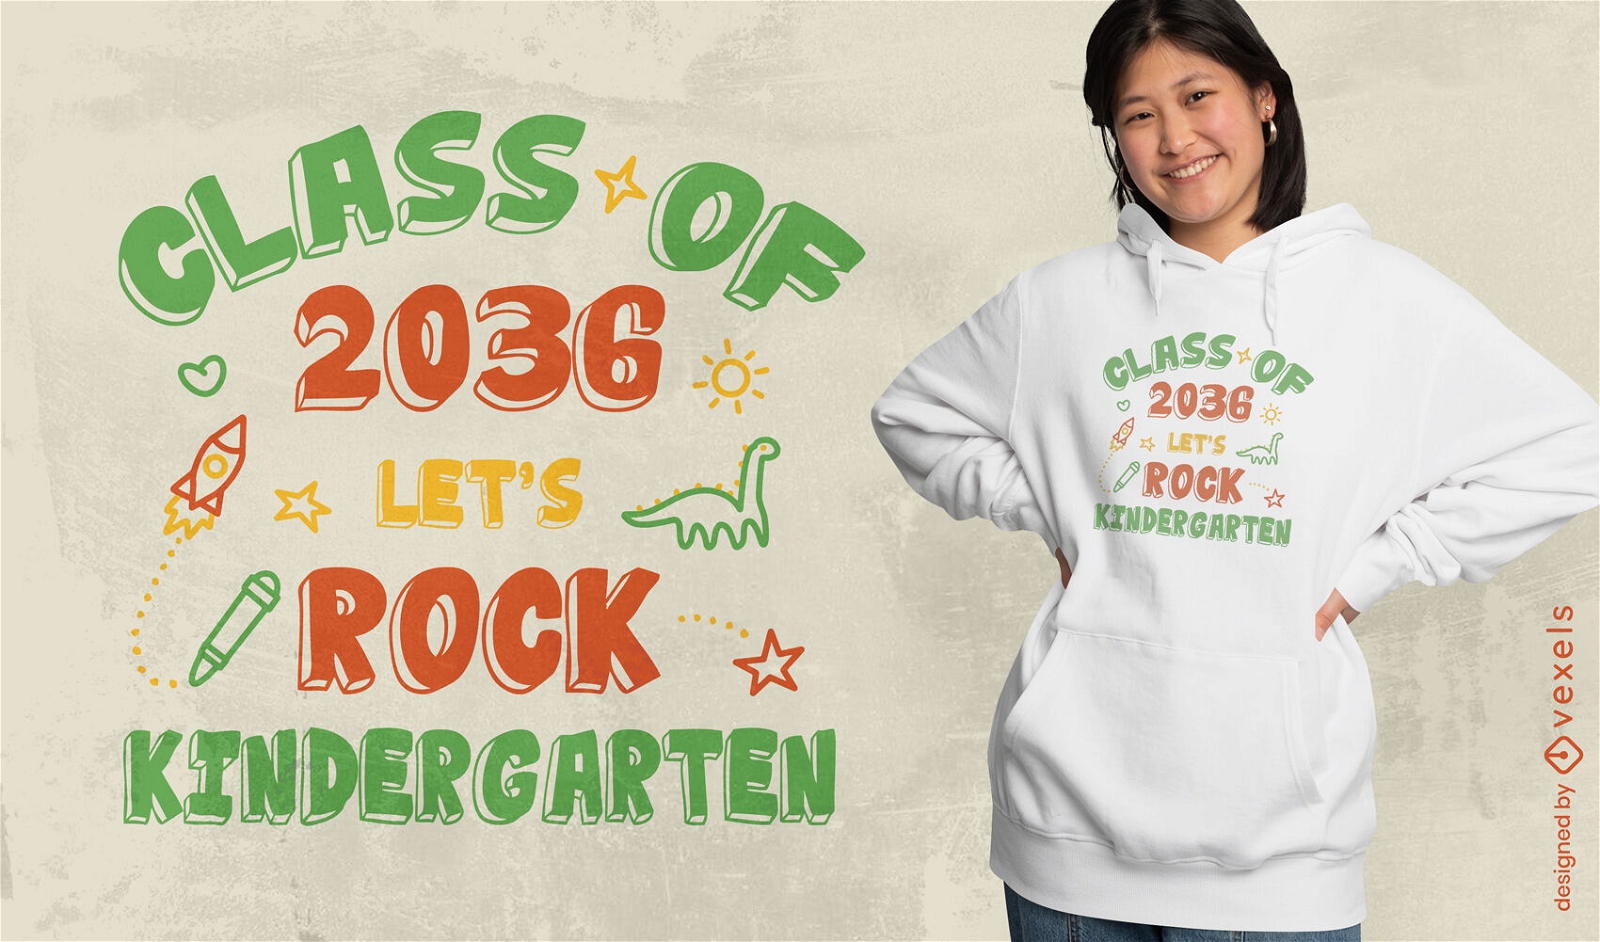 Let's rock kindergarten t-shirt design